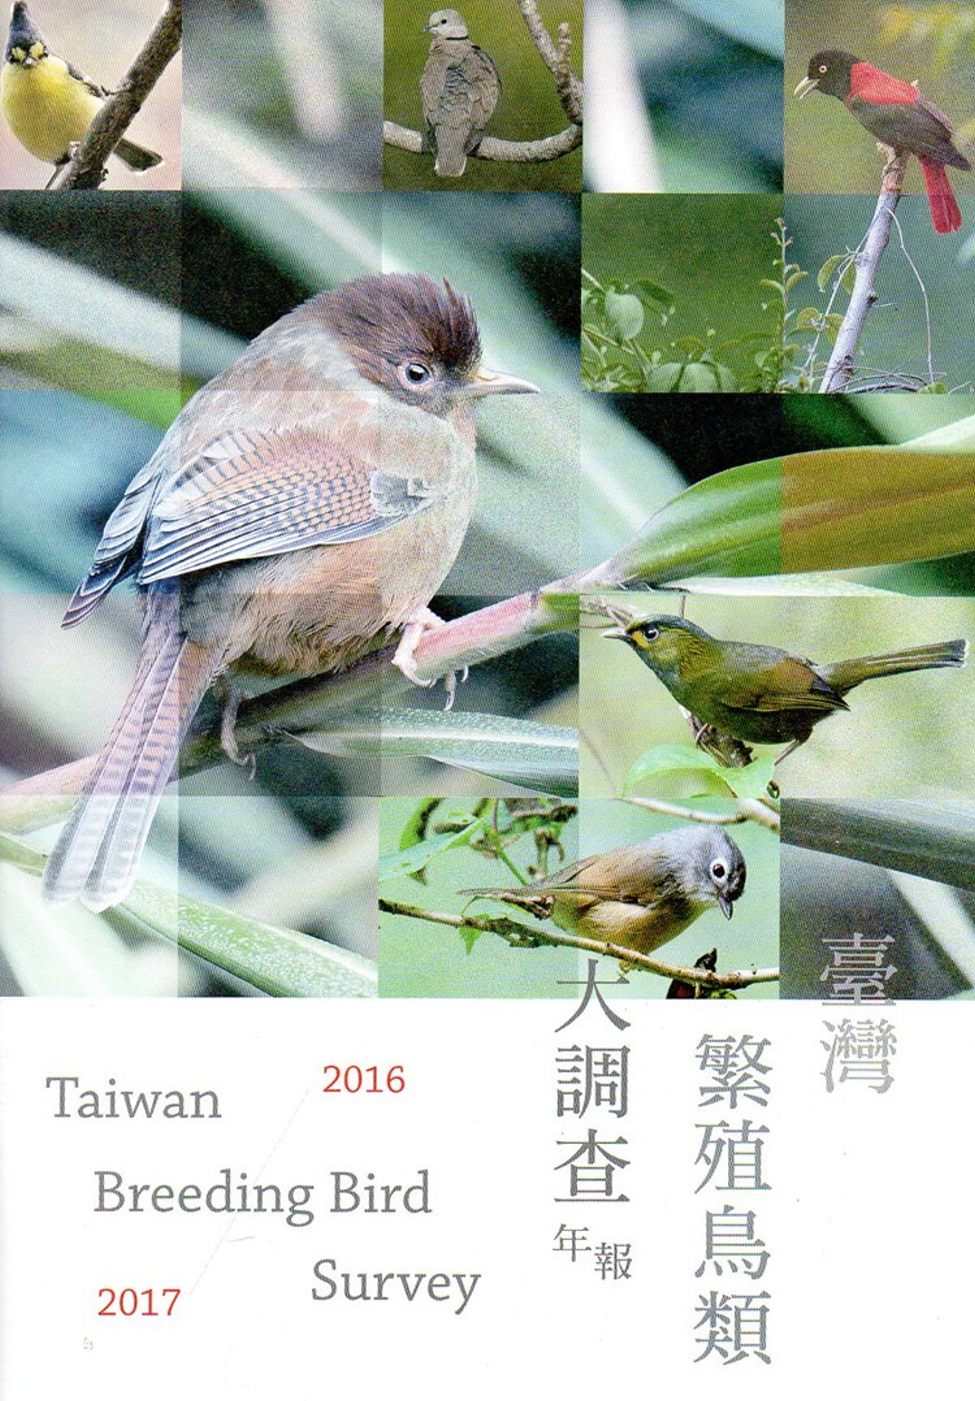 臺灣繁殖鳥類大調查2016-2017年報